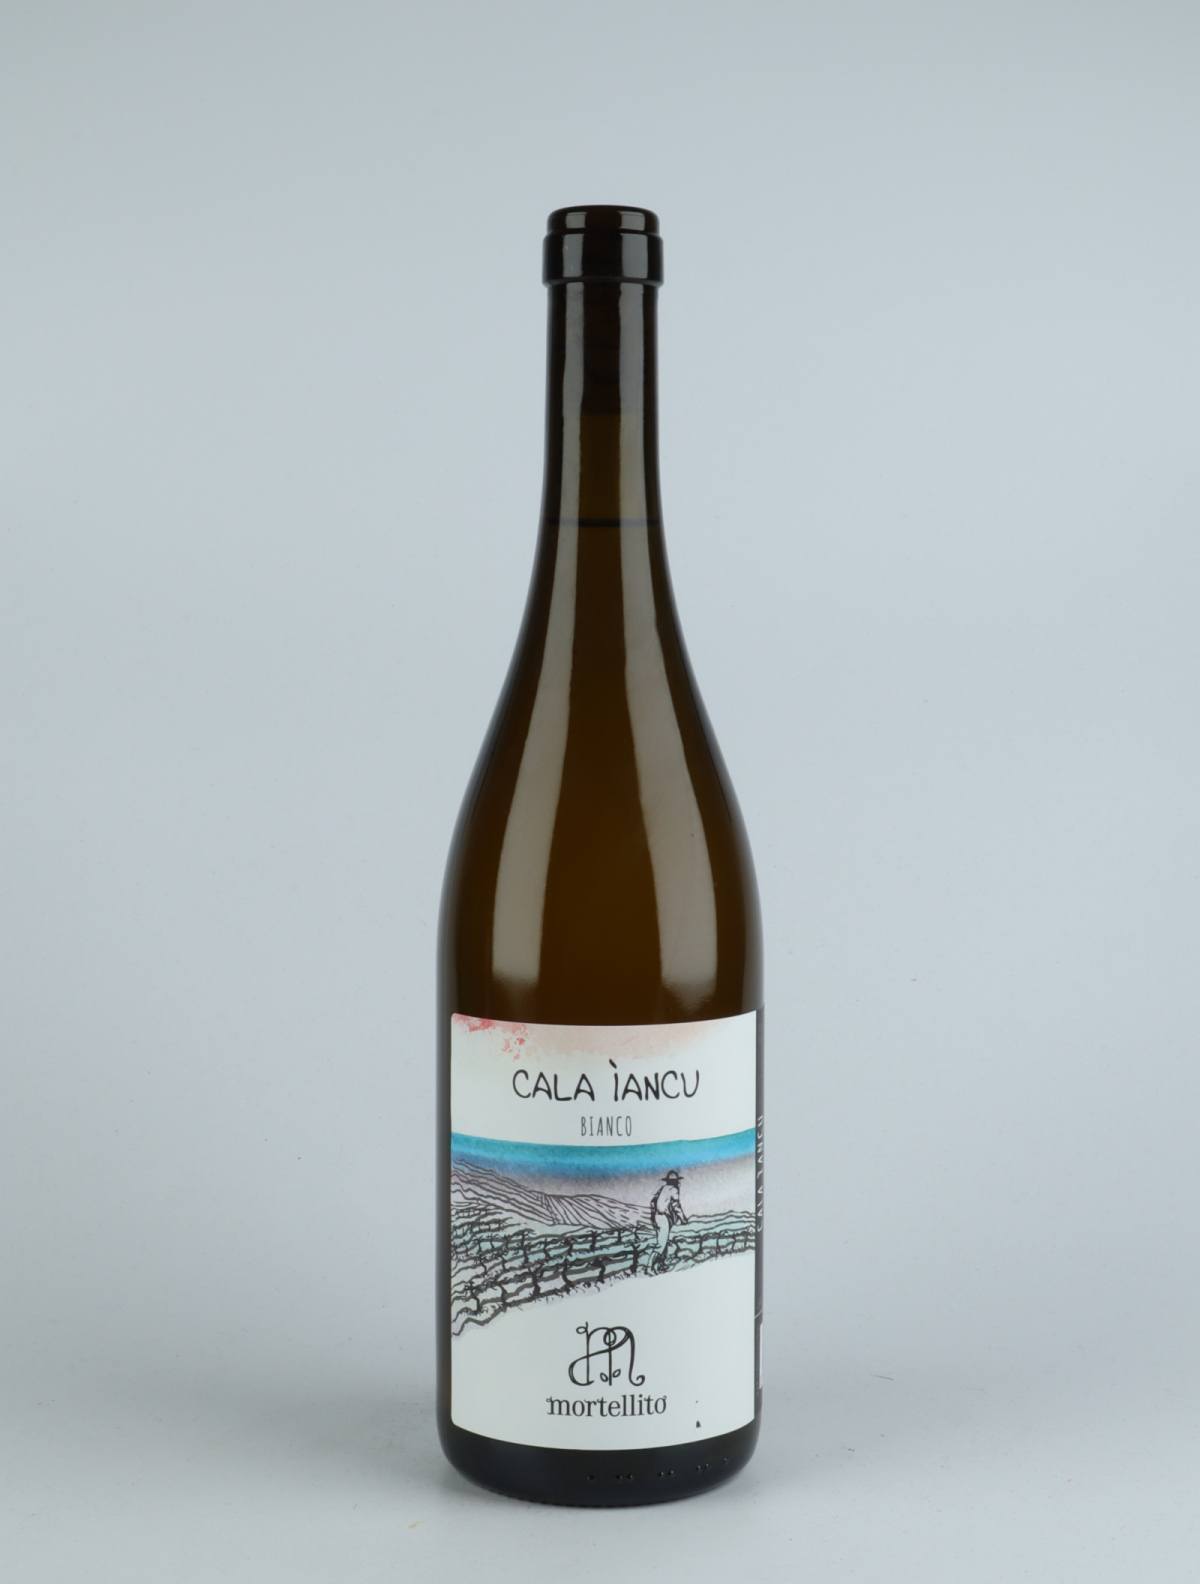 En flaske 2020 Calaiancu - Bianco Hvidvin fra Il Mortellito, Sicilien i Italien